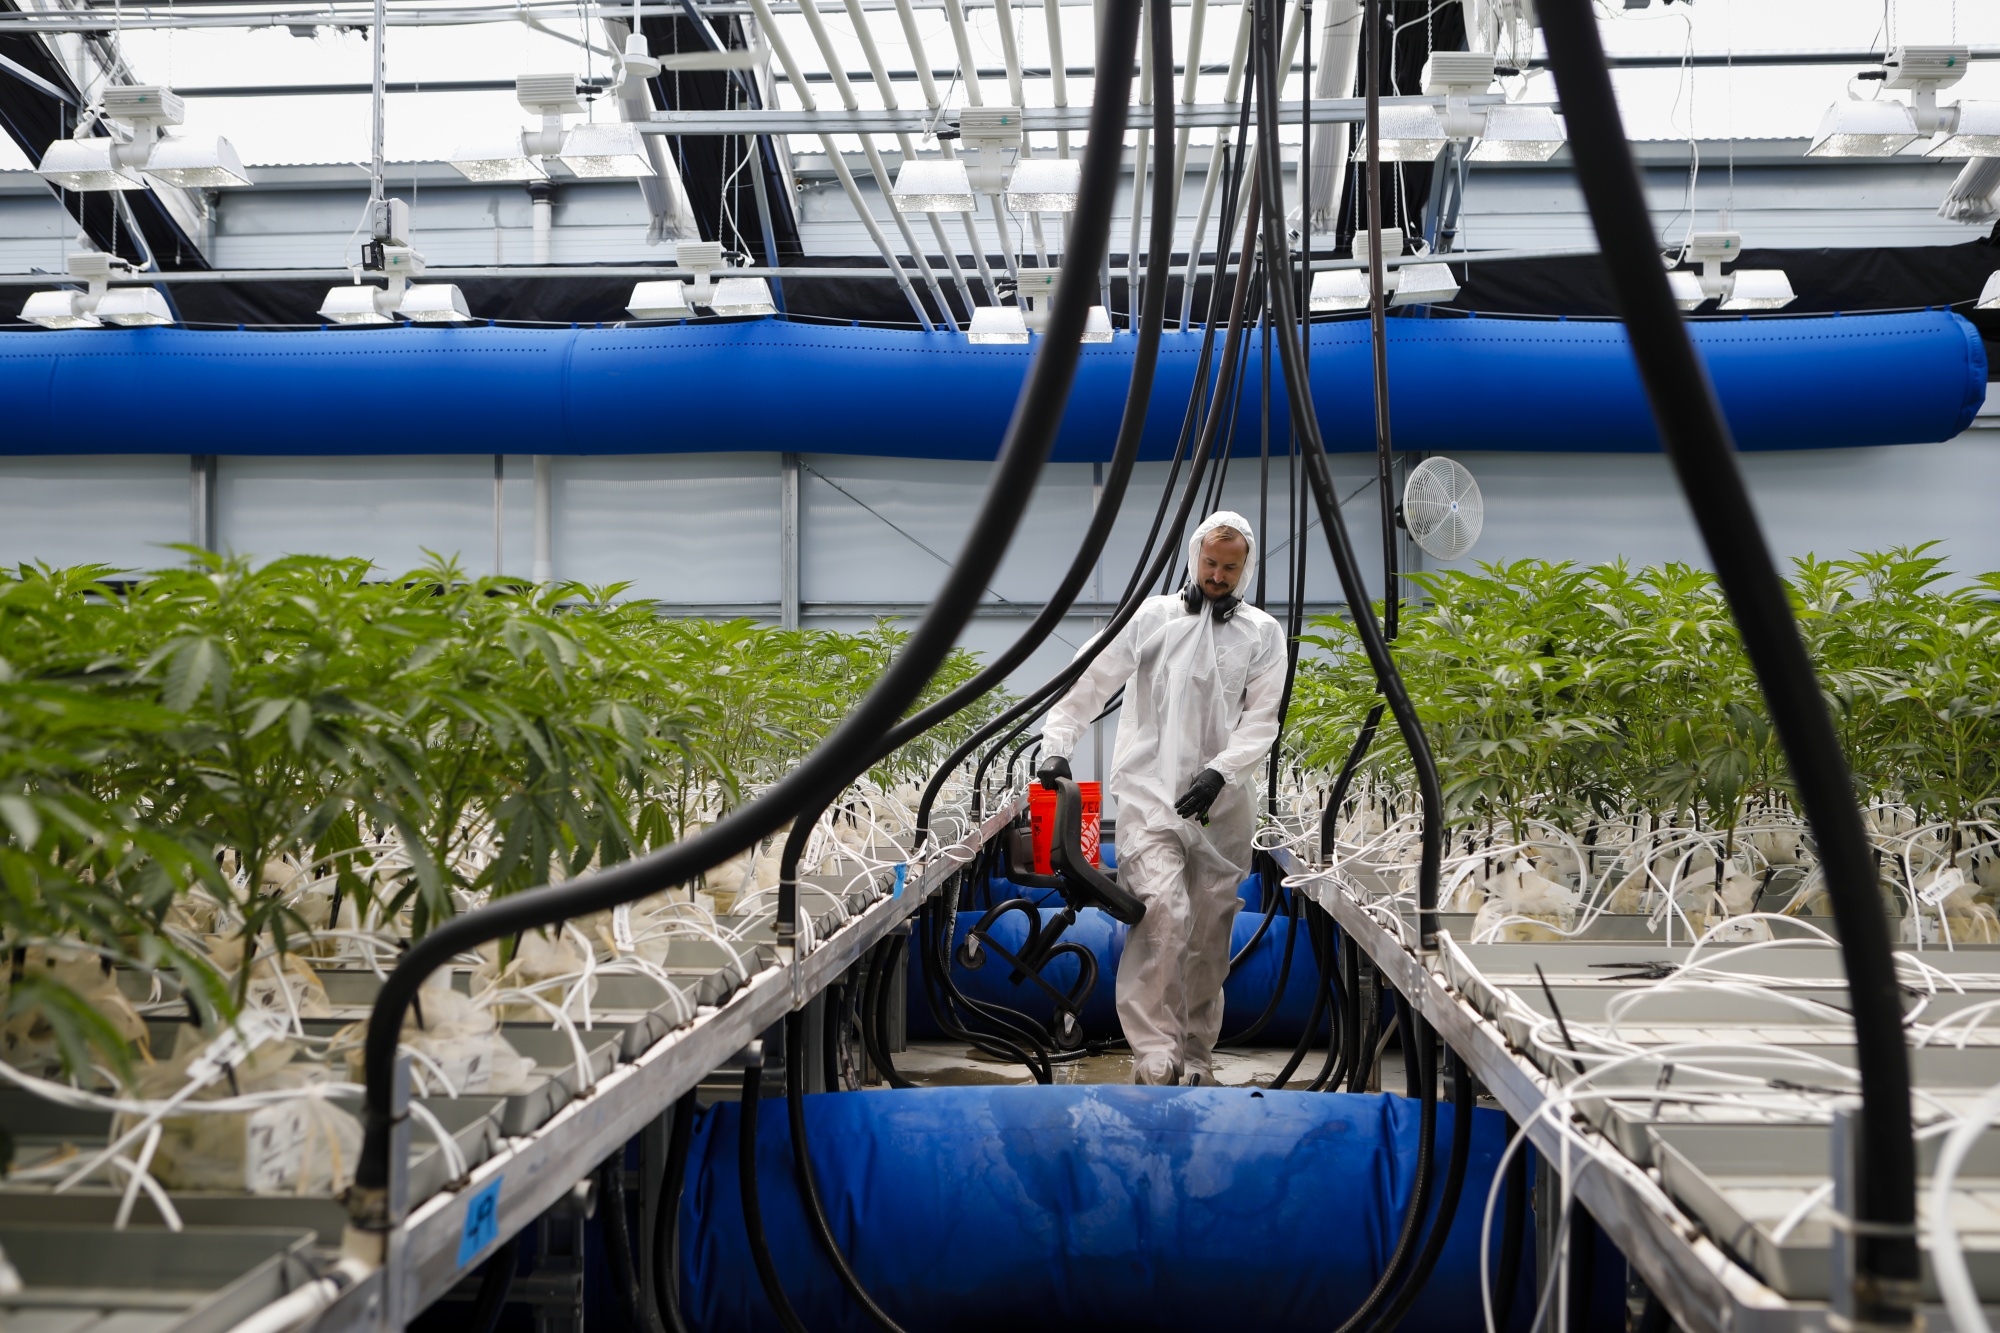 Smokable Plants You Can Grow That Aren't Marijuana Part 2 - Modern